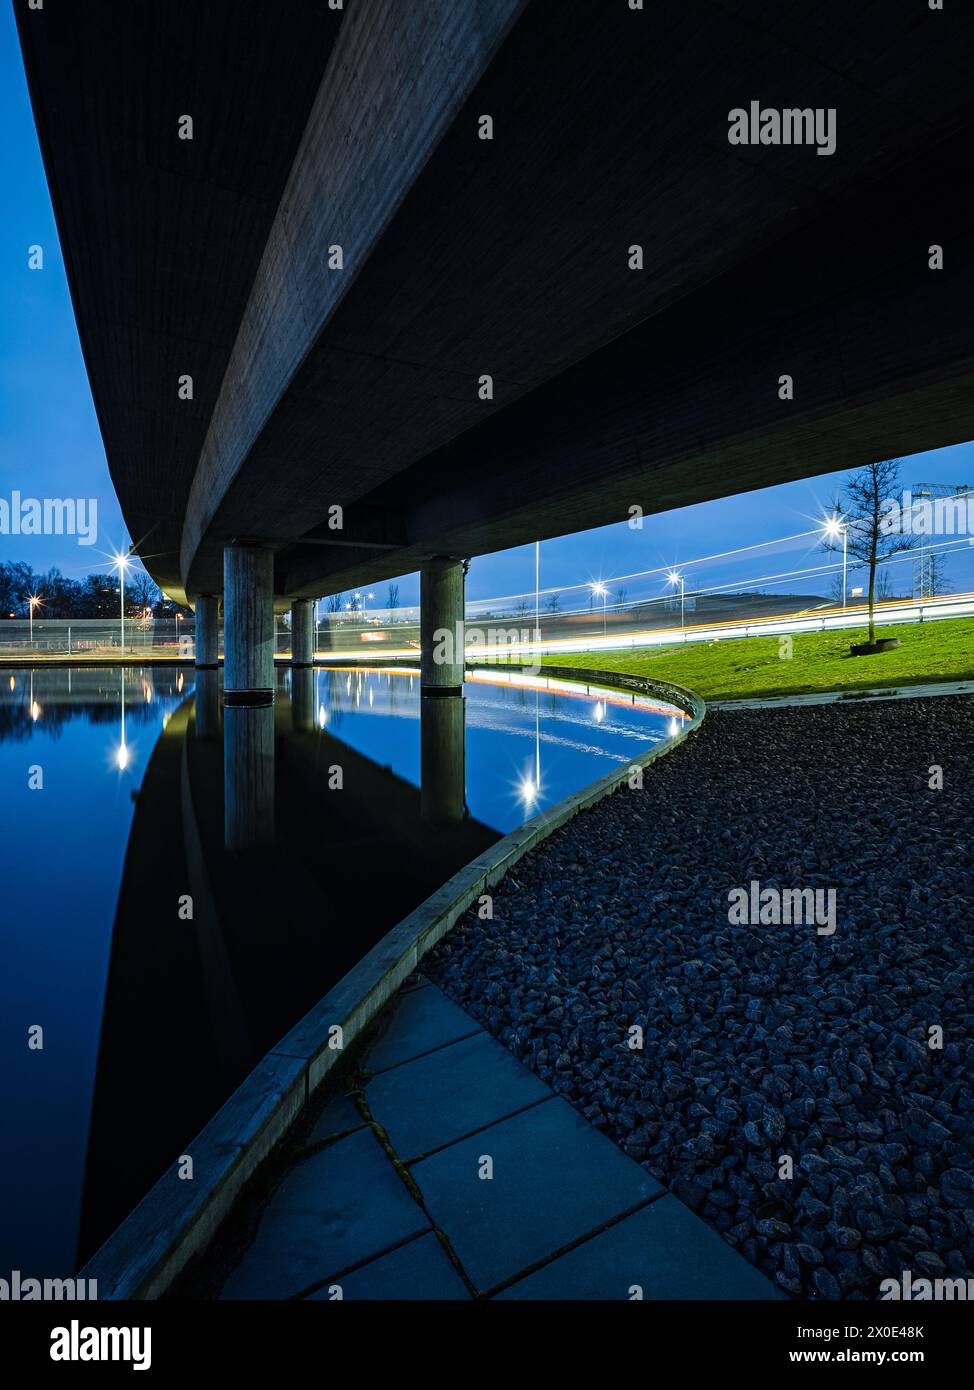 Une scène tranquille se déroule alors que le crépuscule tombe sur Gothenburg, en Suède, regardant de dessous un pont alors qu'il s'étend sur de l'eau calme. L'architecture des ponts c Banque D'Images